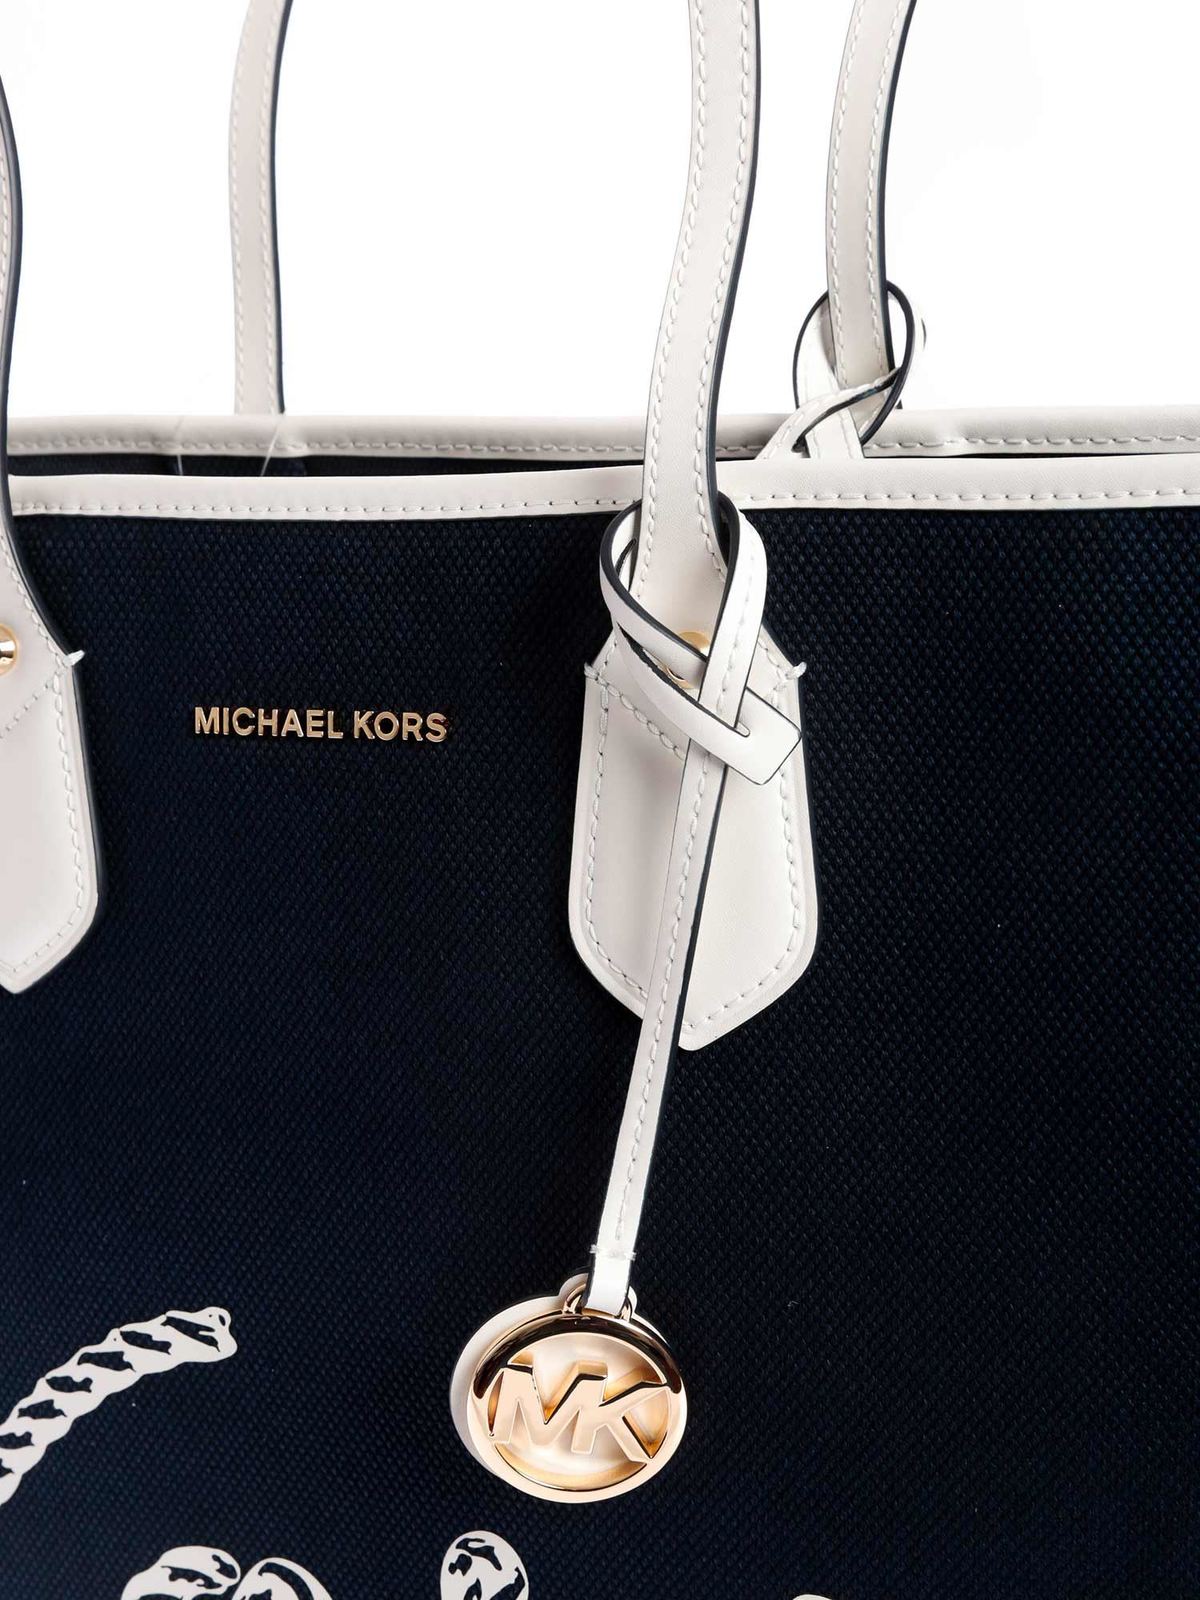 Totes bags Michael Kors - Eva large tote bag in navy blue